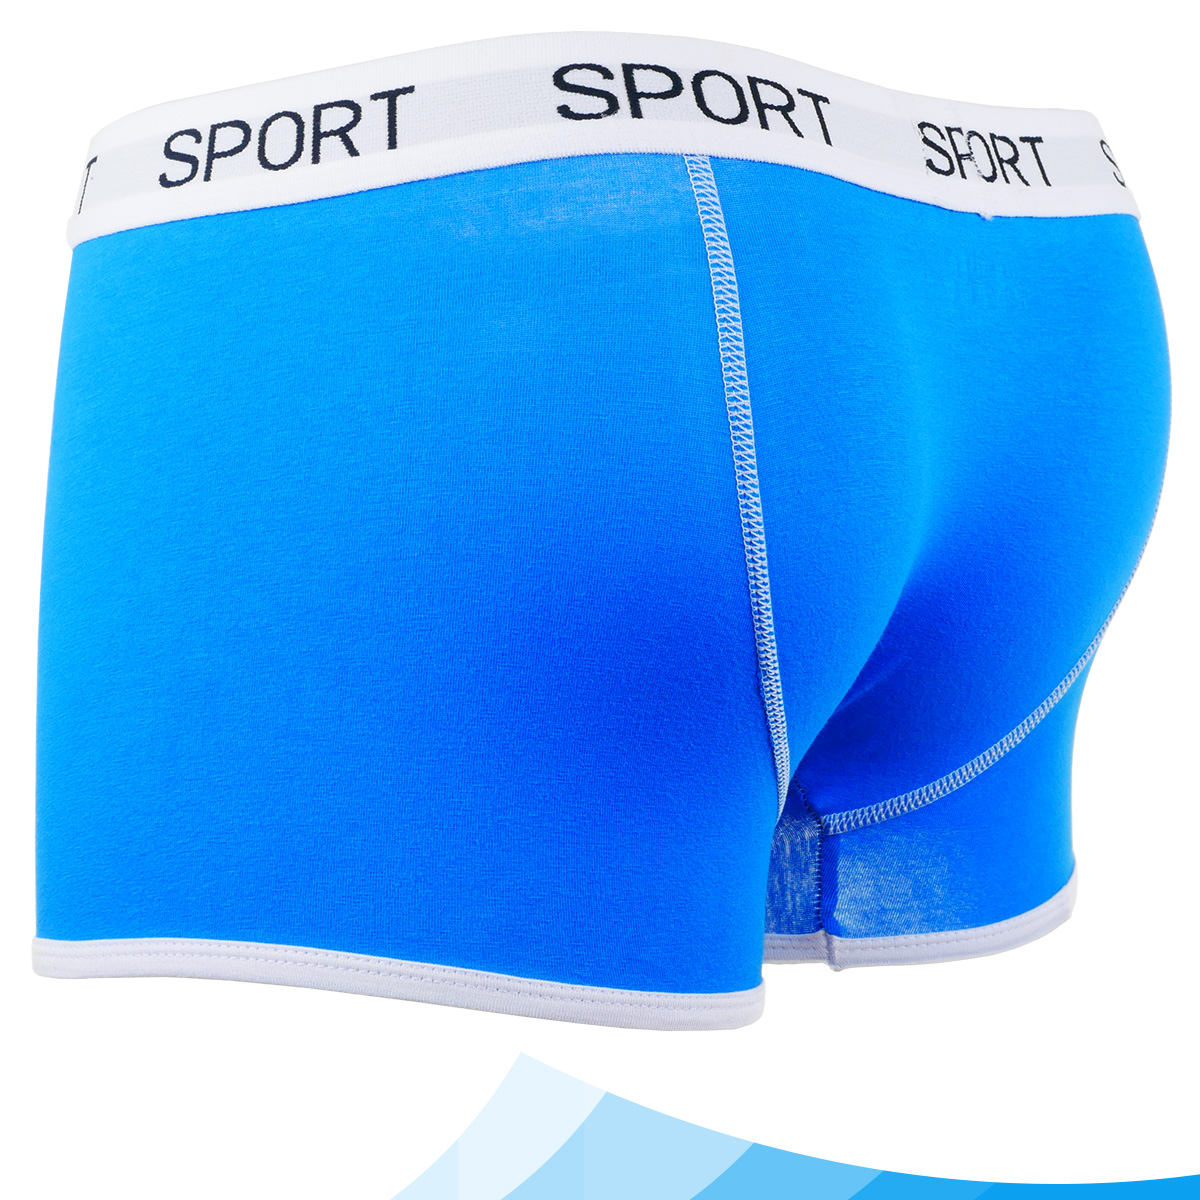 Quần lót nam boxer đùi cotton cao cấp đẹp gợi cảm Fossati Sport co dãn 4 chiều màu xanh trẻ trung, vải 75% cotton 25% Spandex mềm mịn may thể thao tôn dáng